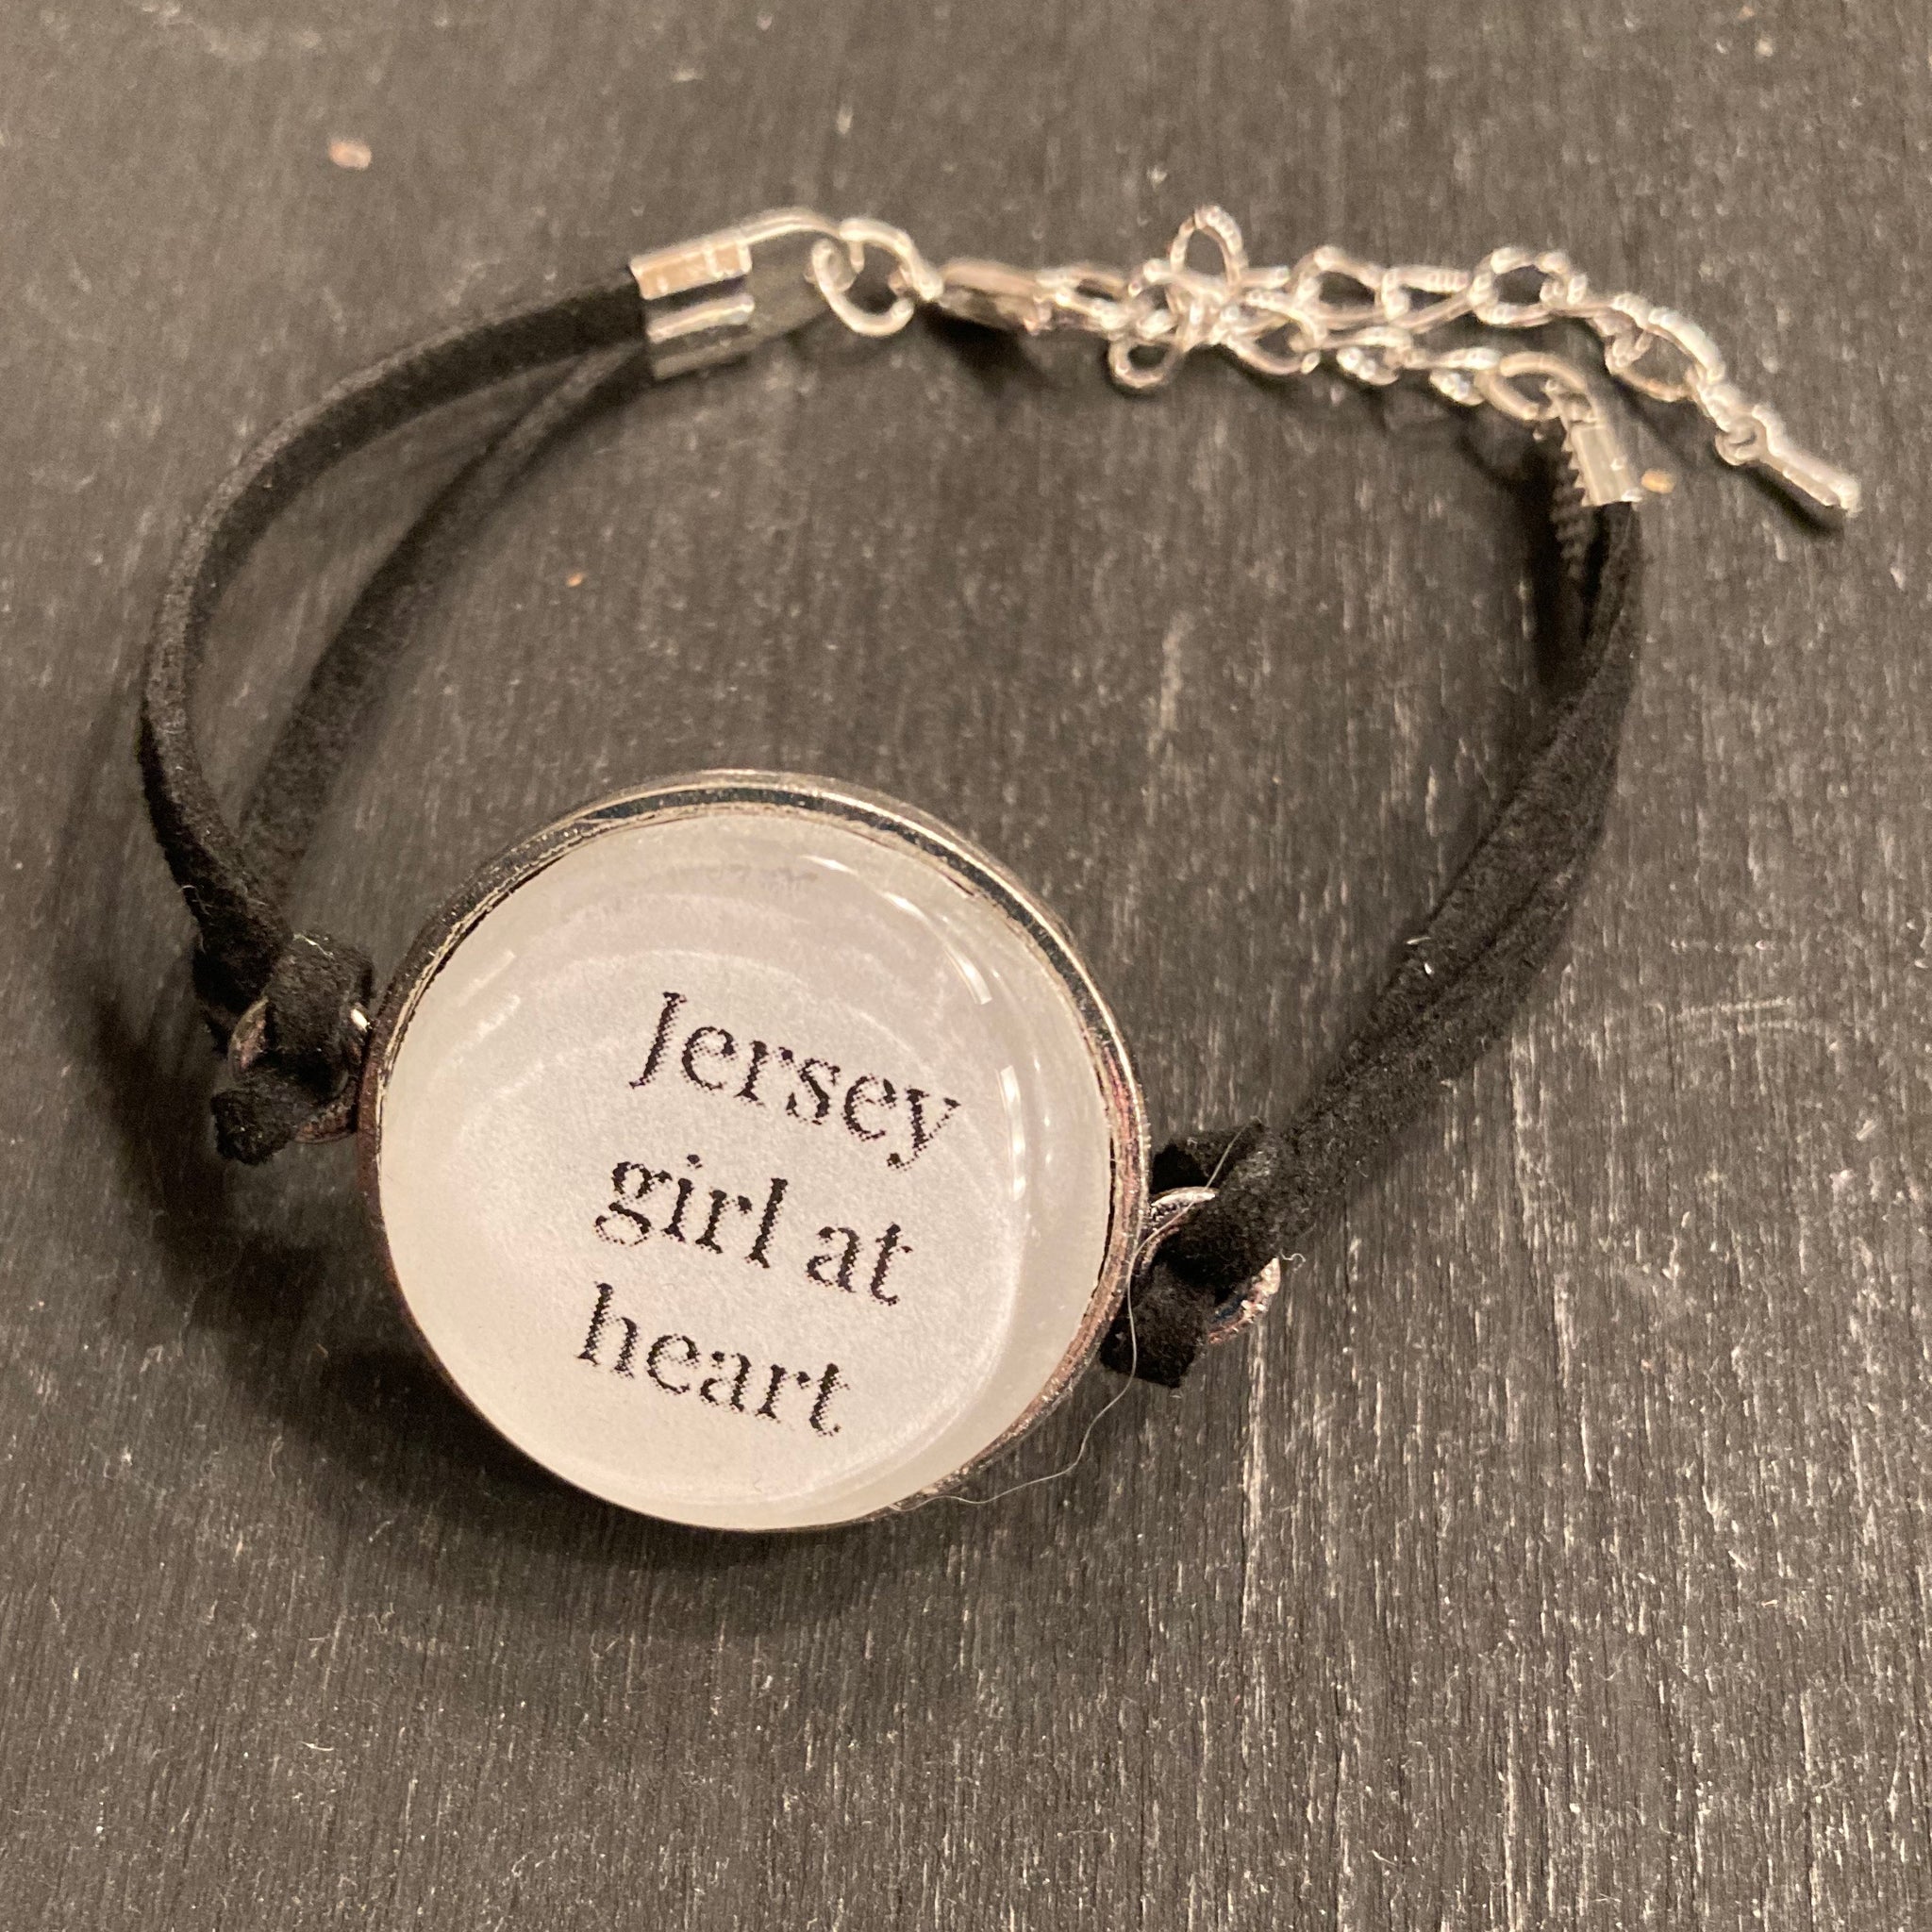 Bracelet - Jersey Girl At Heart